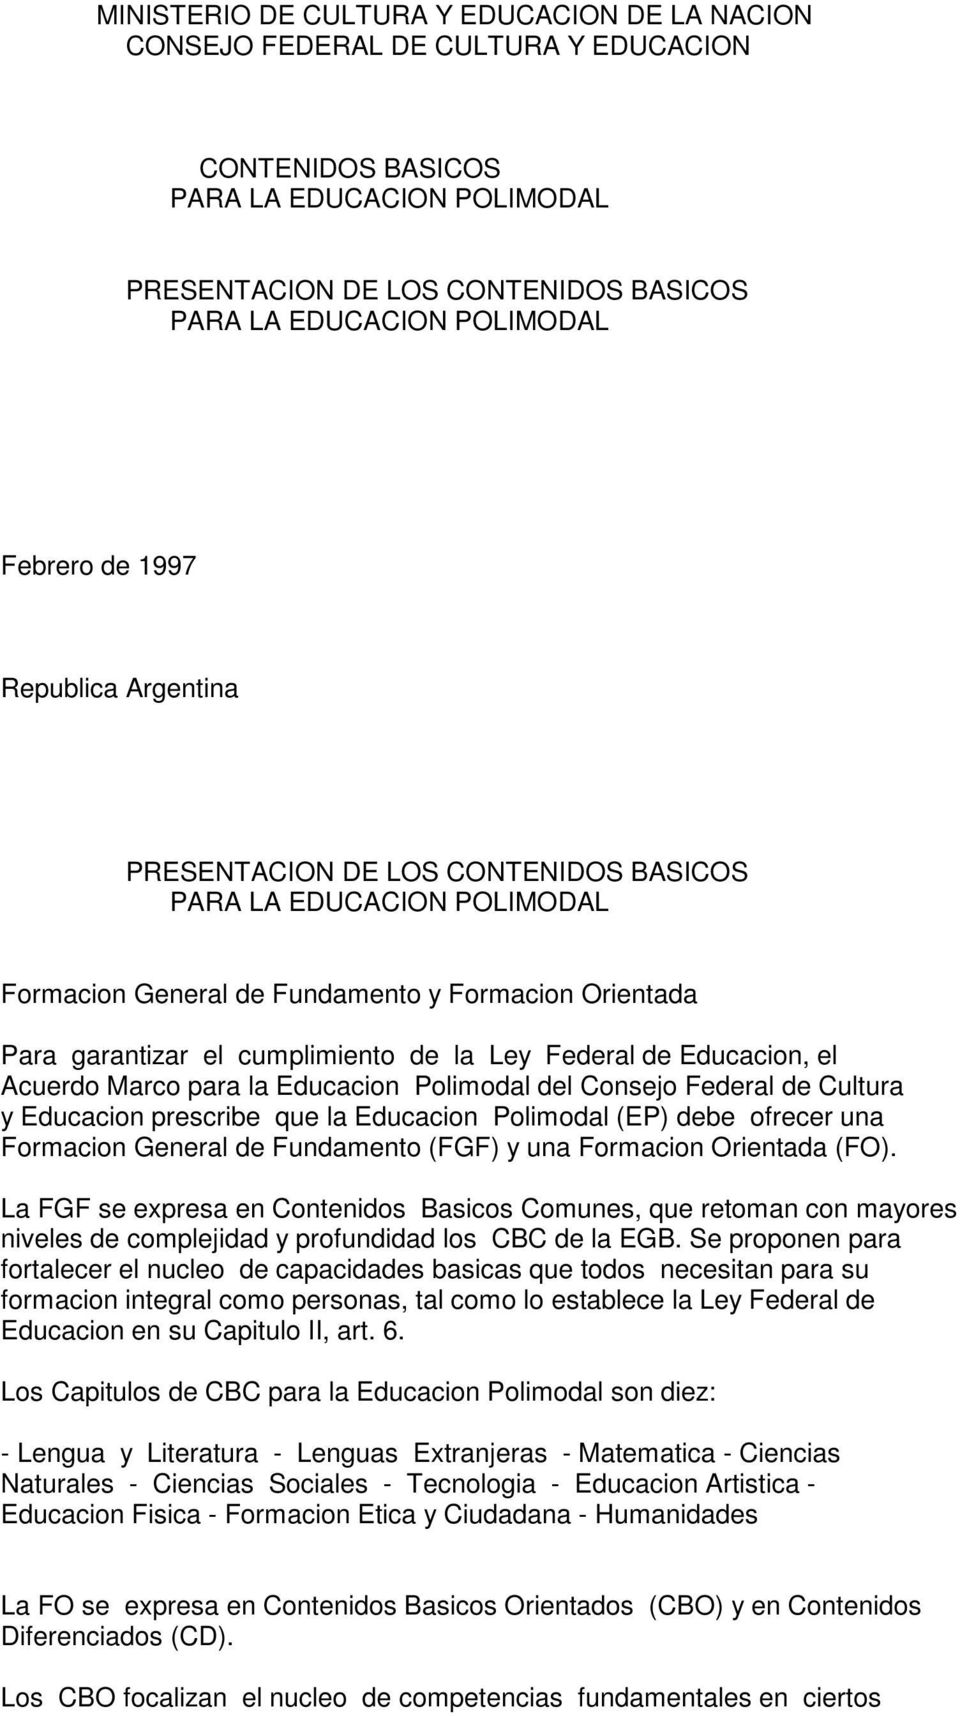 Federal de Cultura y Educacion prescribe que la Educacion Polimodal (EP) debe ofrecer una Formacion General de Fundamento (FGF) y una Formacion Orientada (FO).